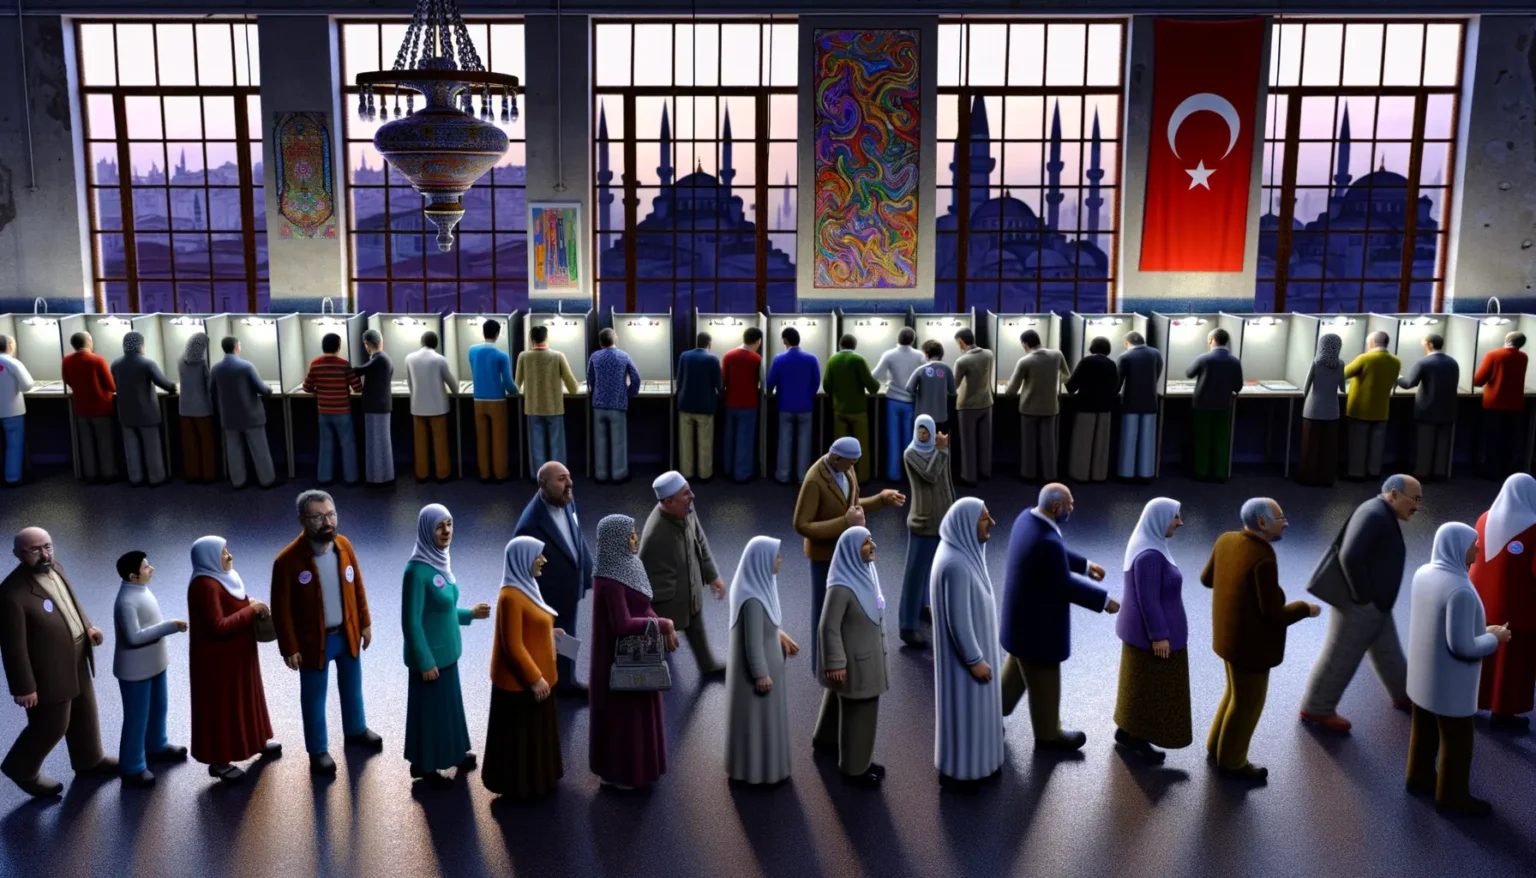 Eine Gruppe von Menschen, viele davon in traditioneller islamischer Kleidung, steht in einem großen Raum vor Wahlkabinen. Im Hintergrund sind große Fenster, durch die man ein Stadtbild bei Dämmerung sieht, und es hängen die türkische Flagge sowie verzierte Wandteppiche und eine Lampe. Die Atmosphäre wirkt ernst und fokussiert, da die Personen an einem demokratischen Prozess teilnehmen.